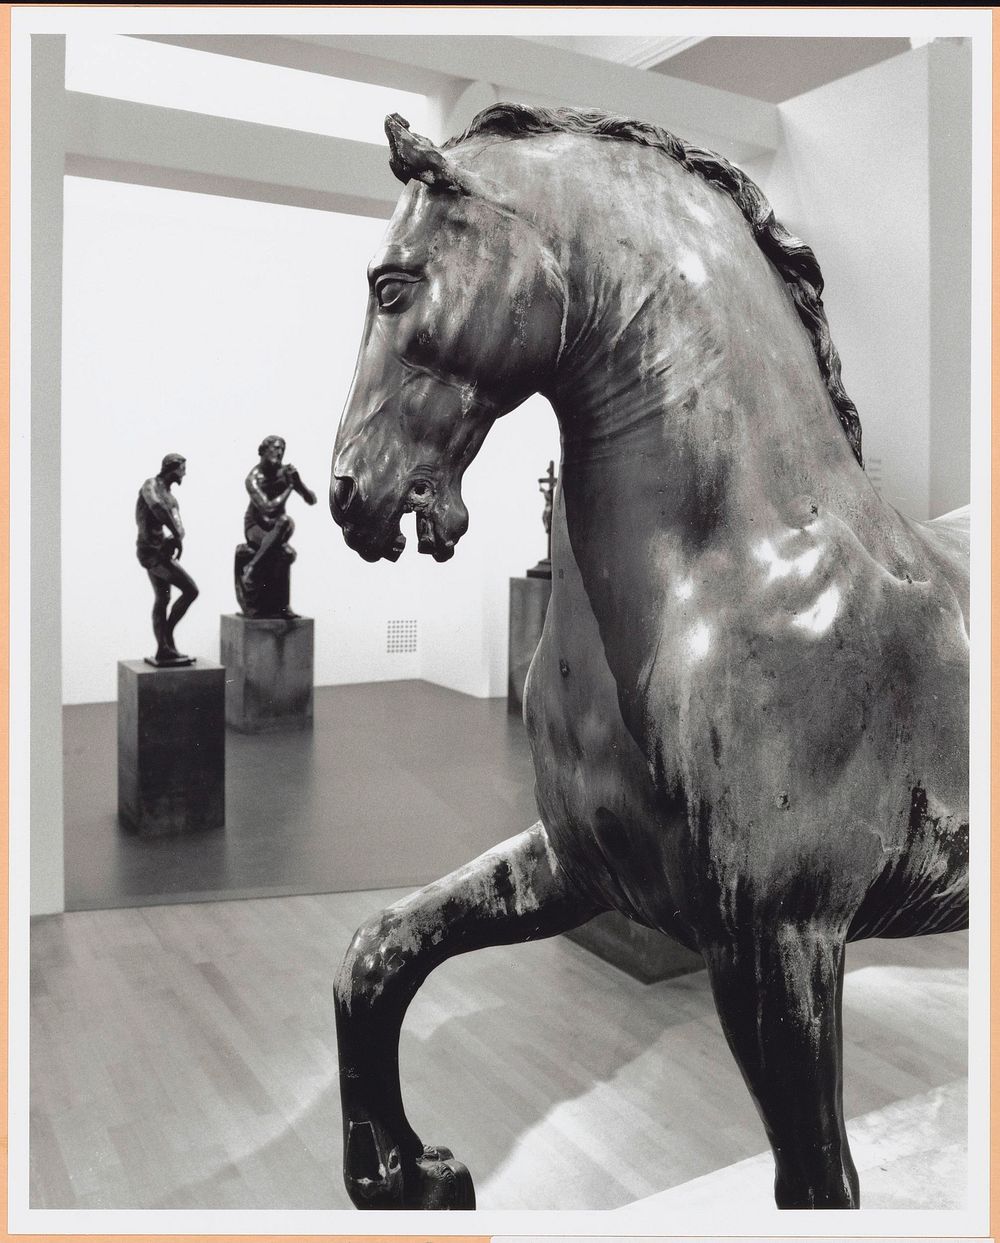 Zaal met vooraan een beeld van een paard, achteraan staan nog drie beelden (c. 1998 - c. 1999) by Rijksmuseum Afdeling Beeld